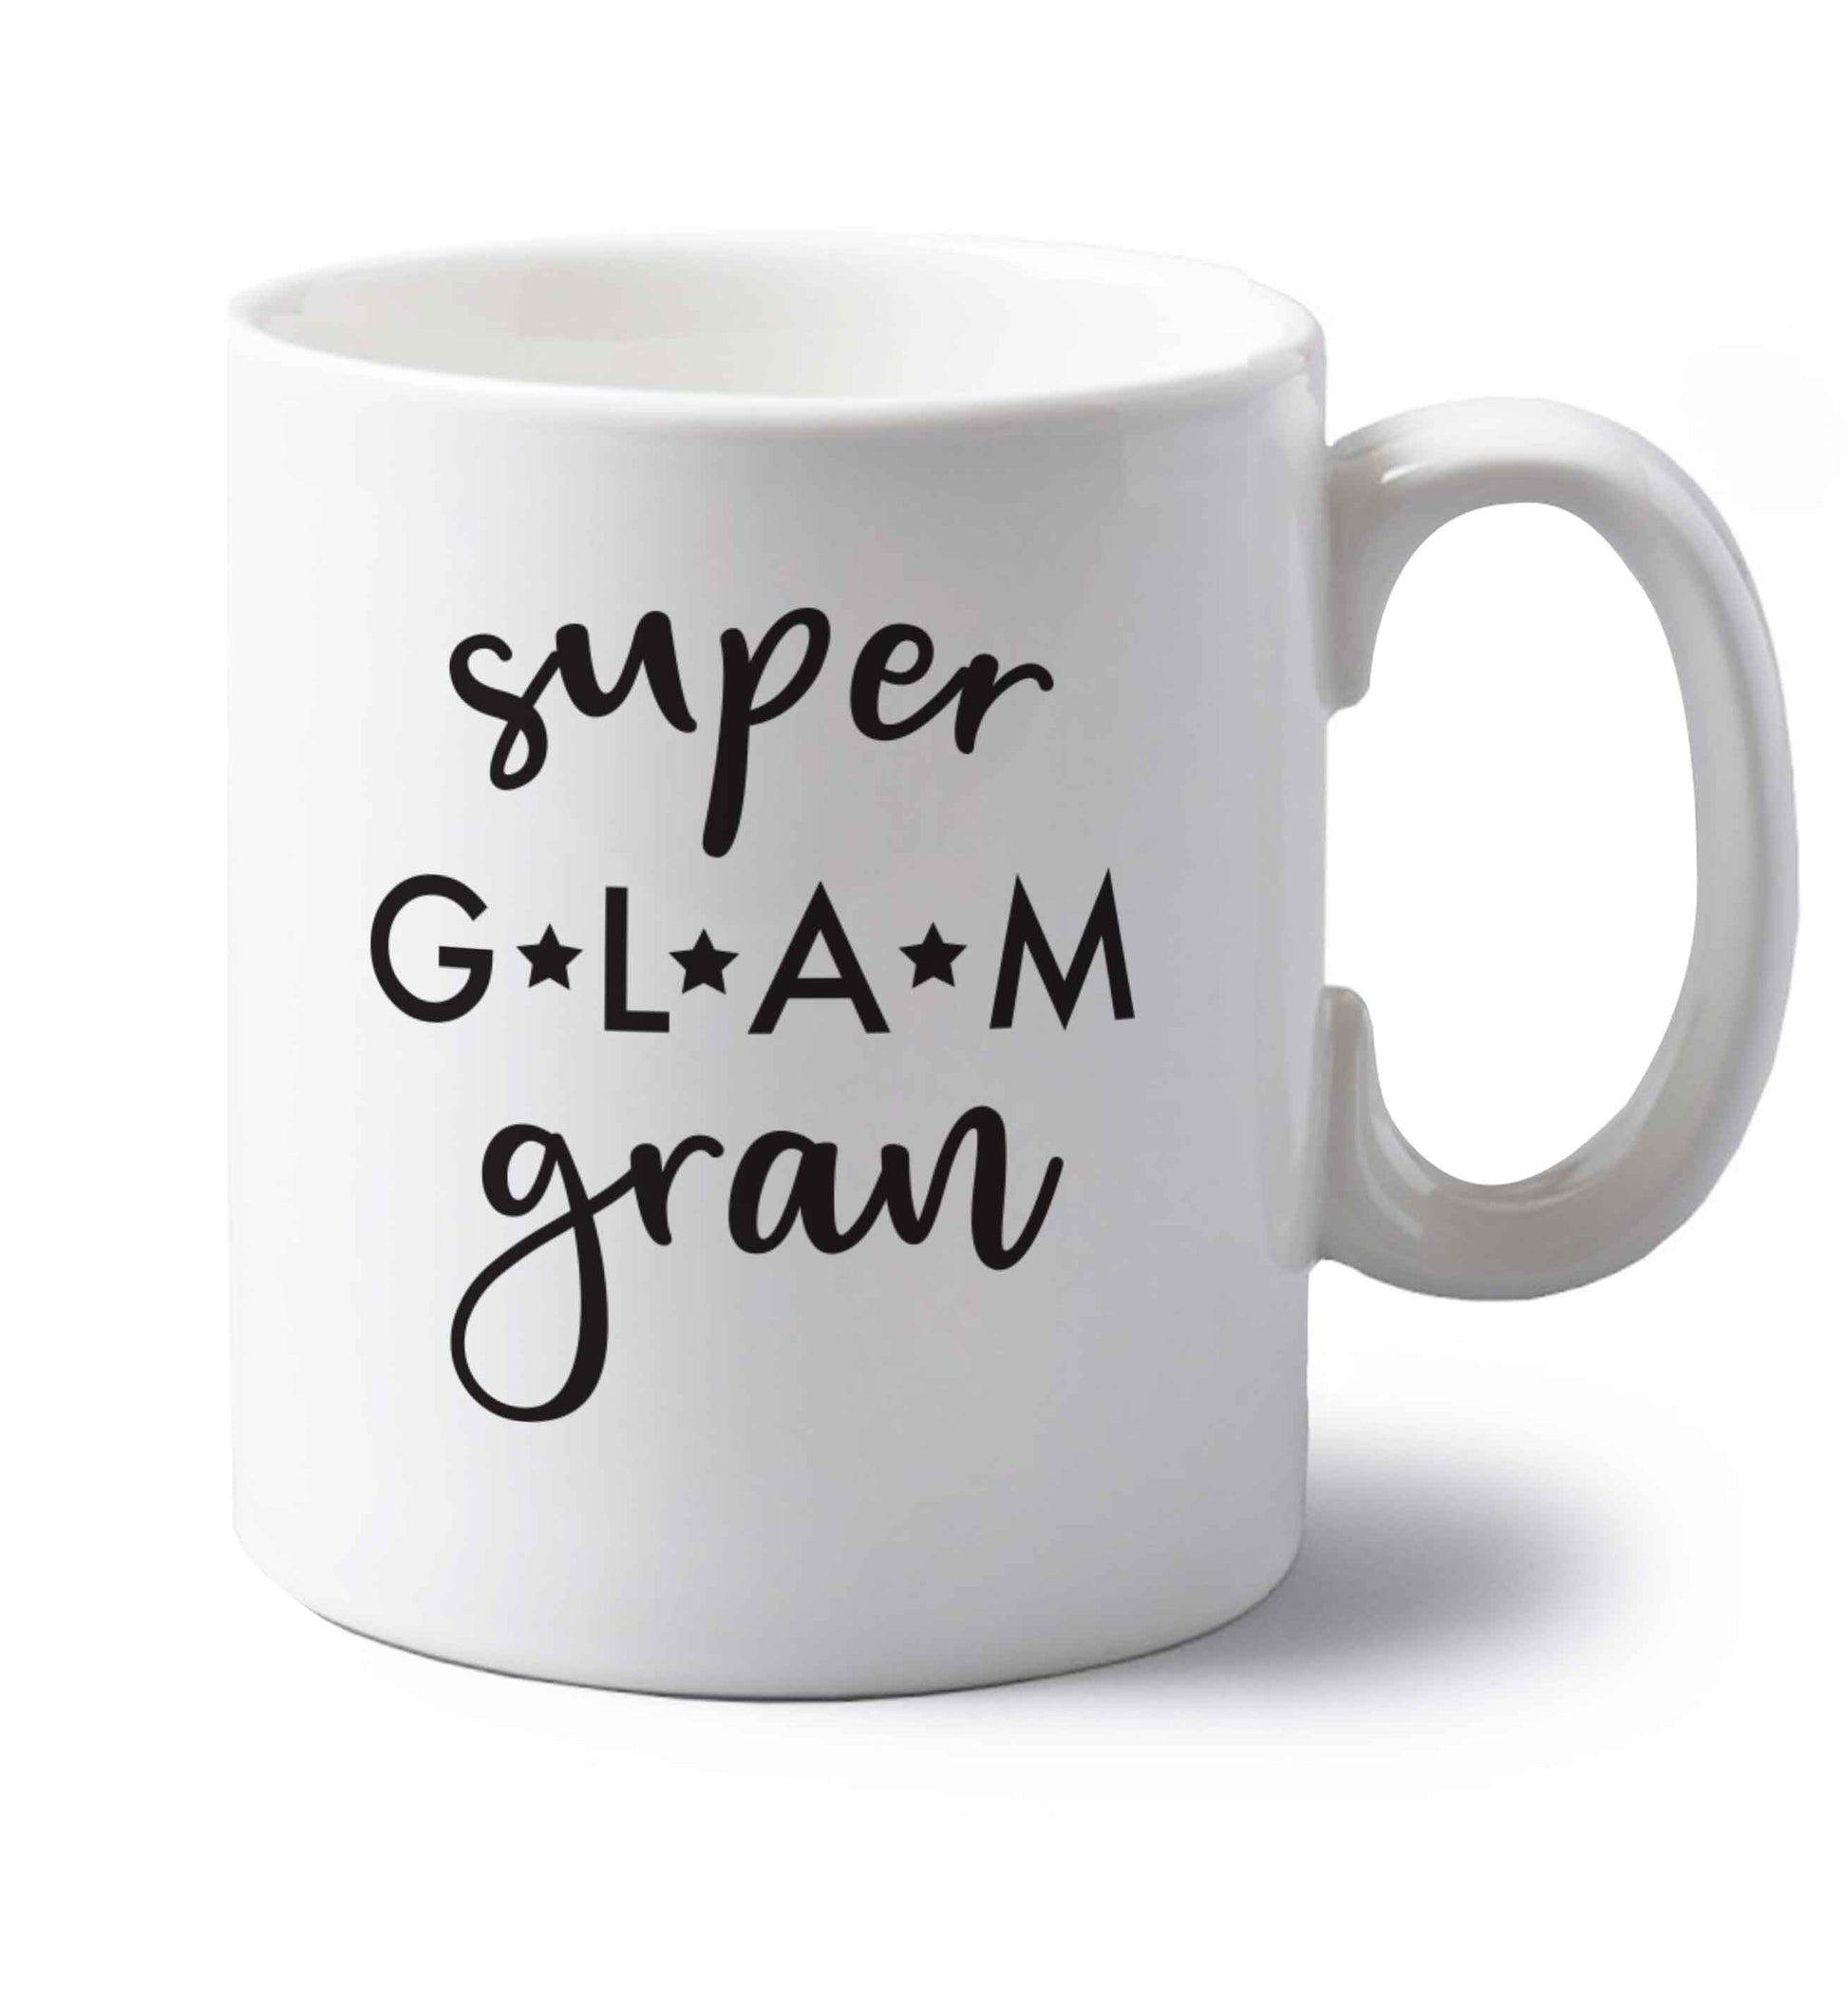 Super glam gran left handed white ceramic mug 